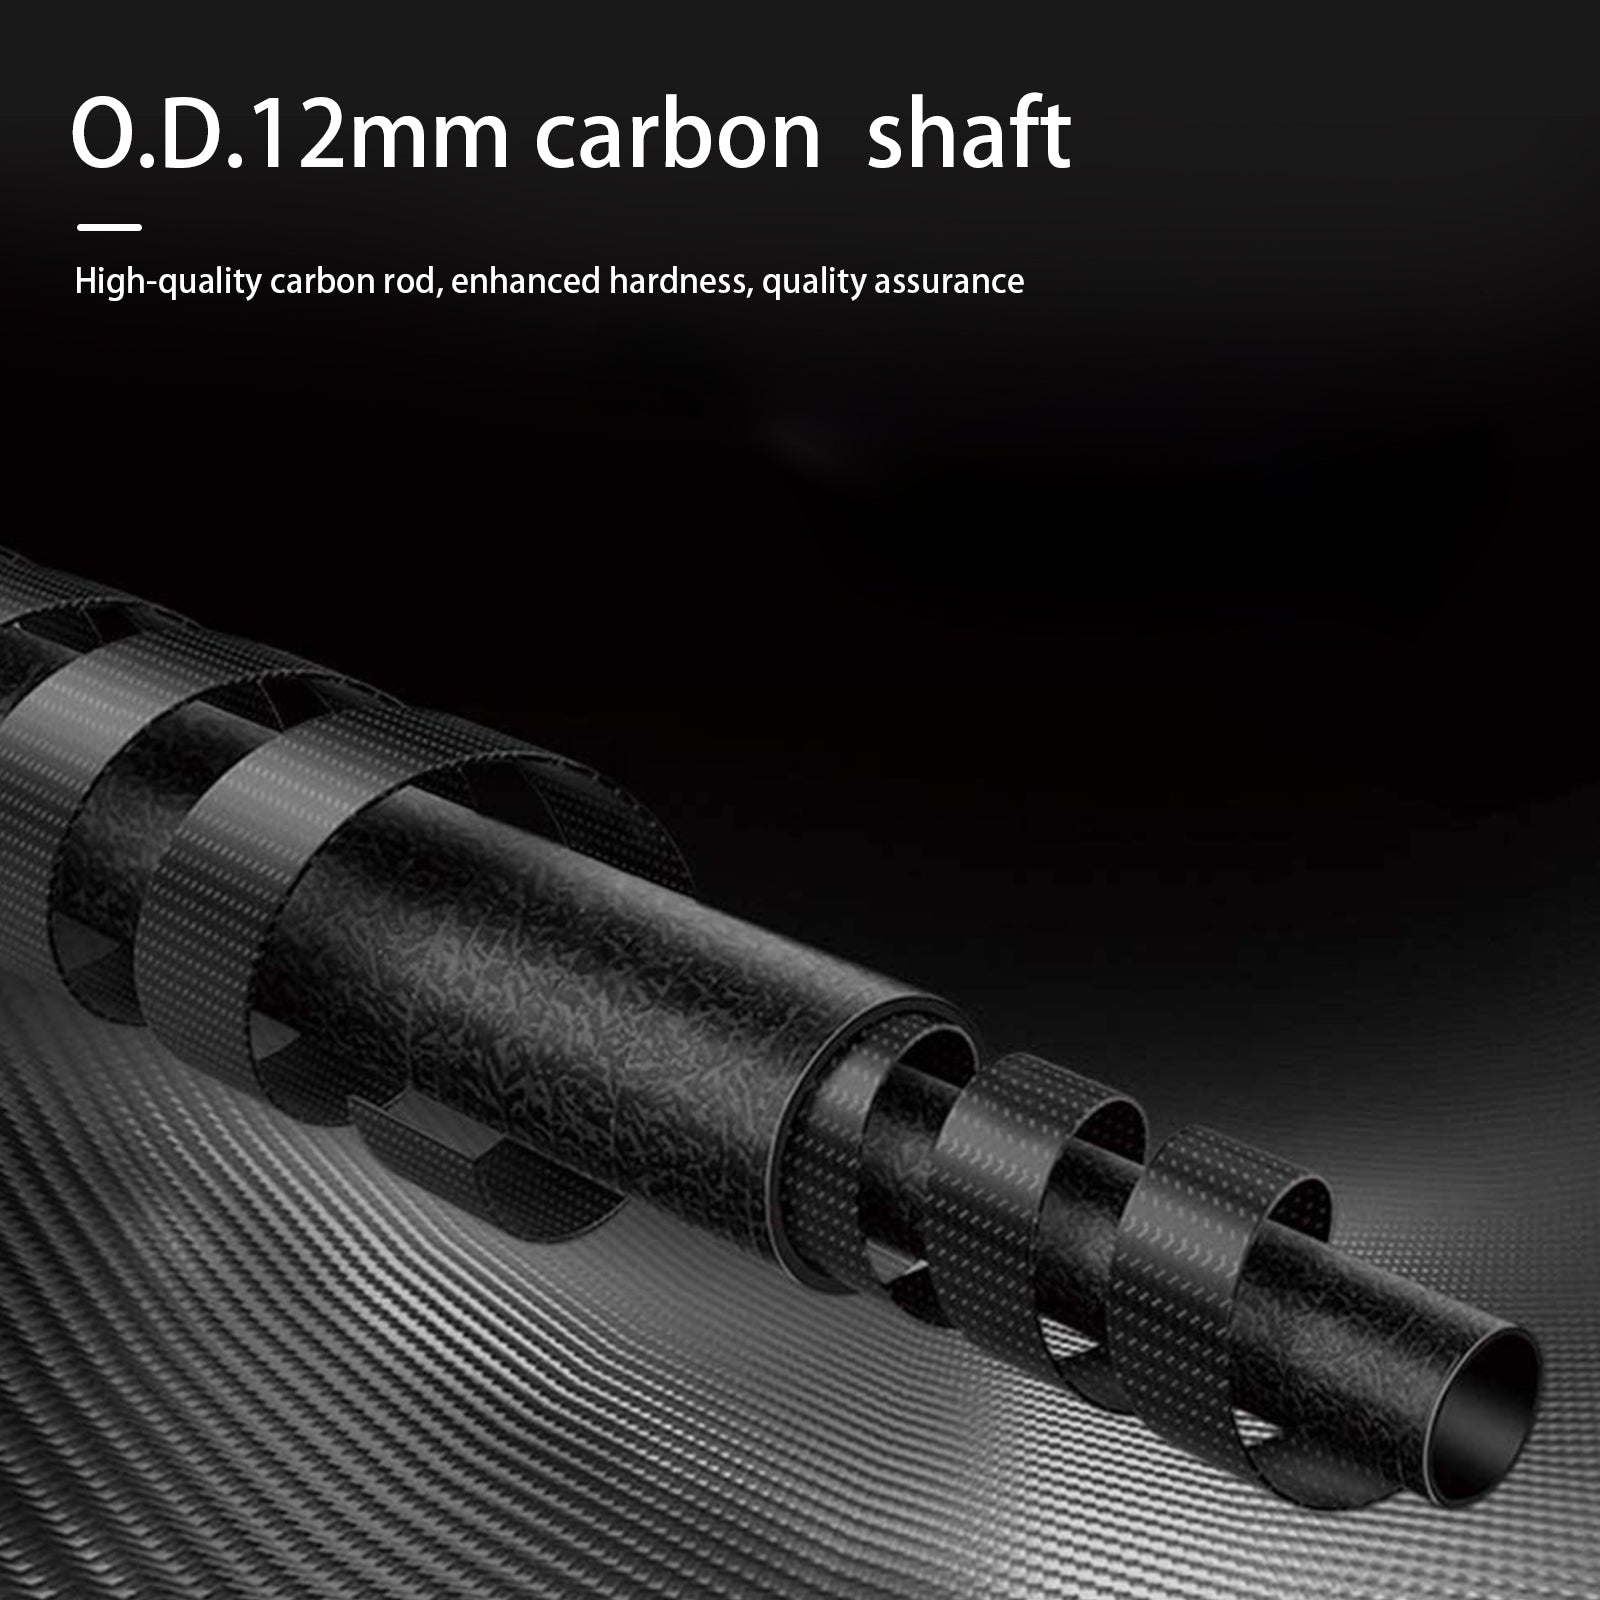 Soporte de arco recurvo profesional ST07 3K de fibra de vidrio de carbono puro plegable, ajustable y más ligero 